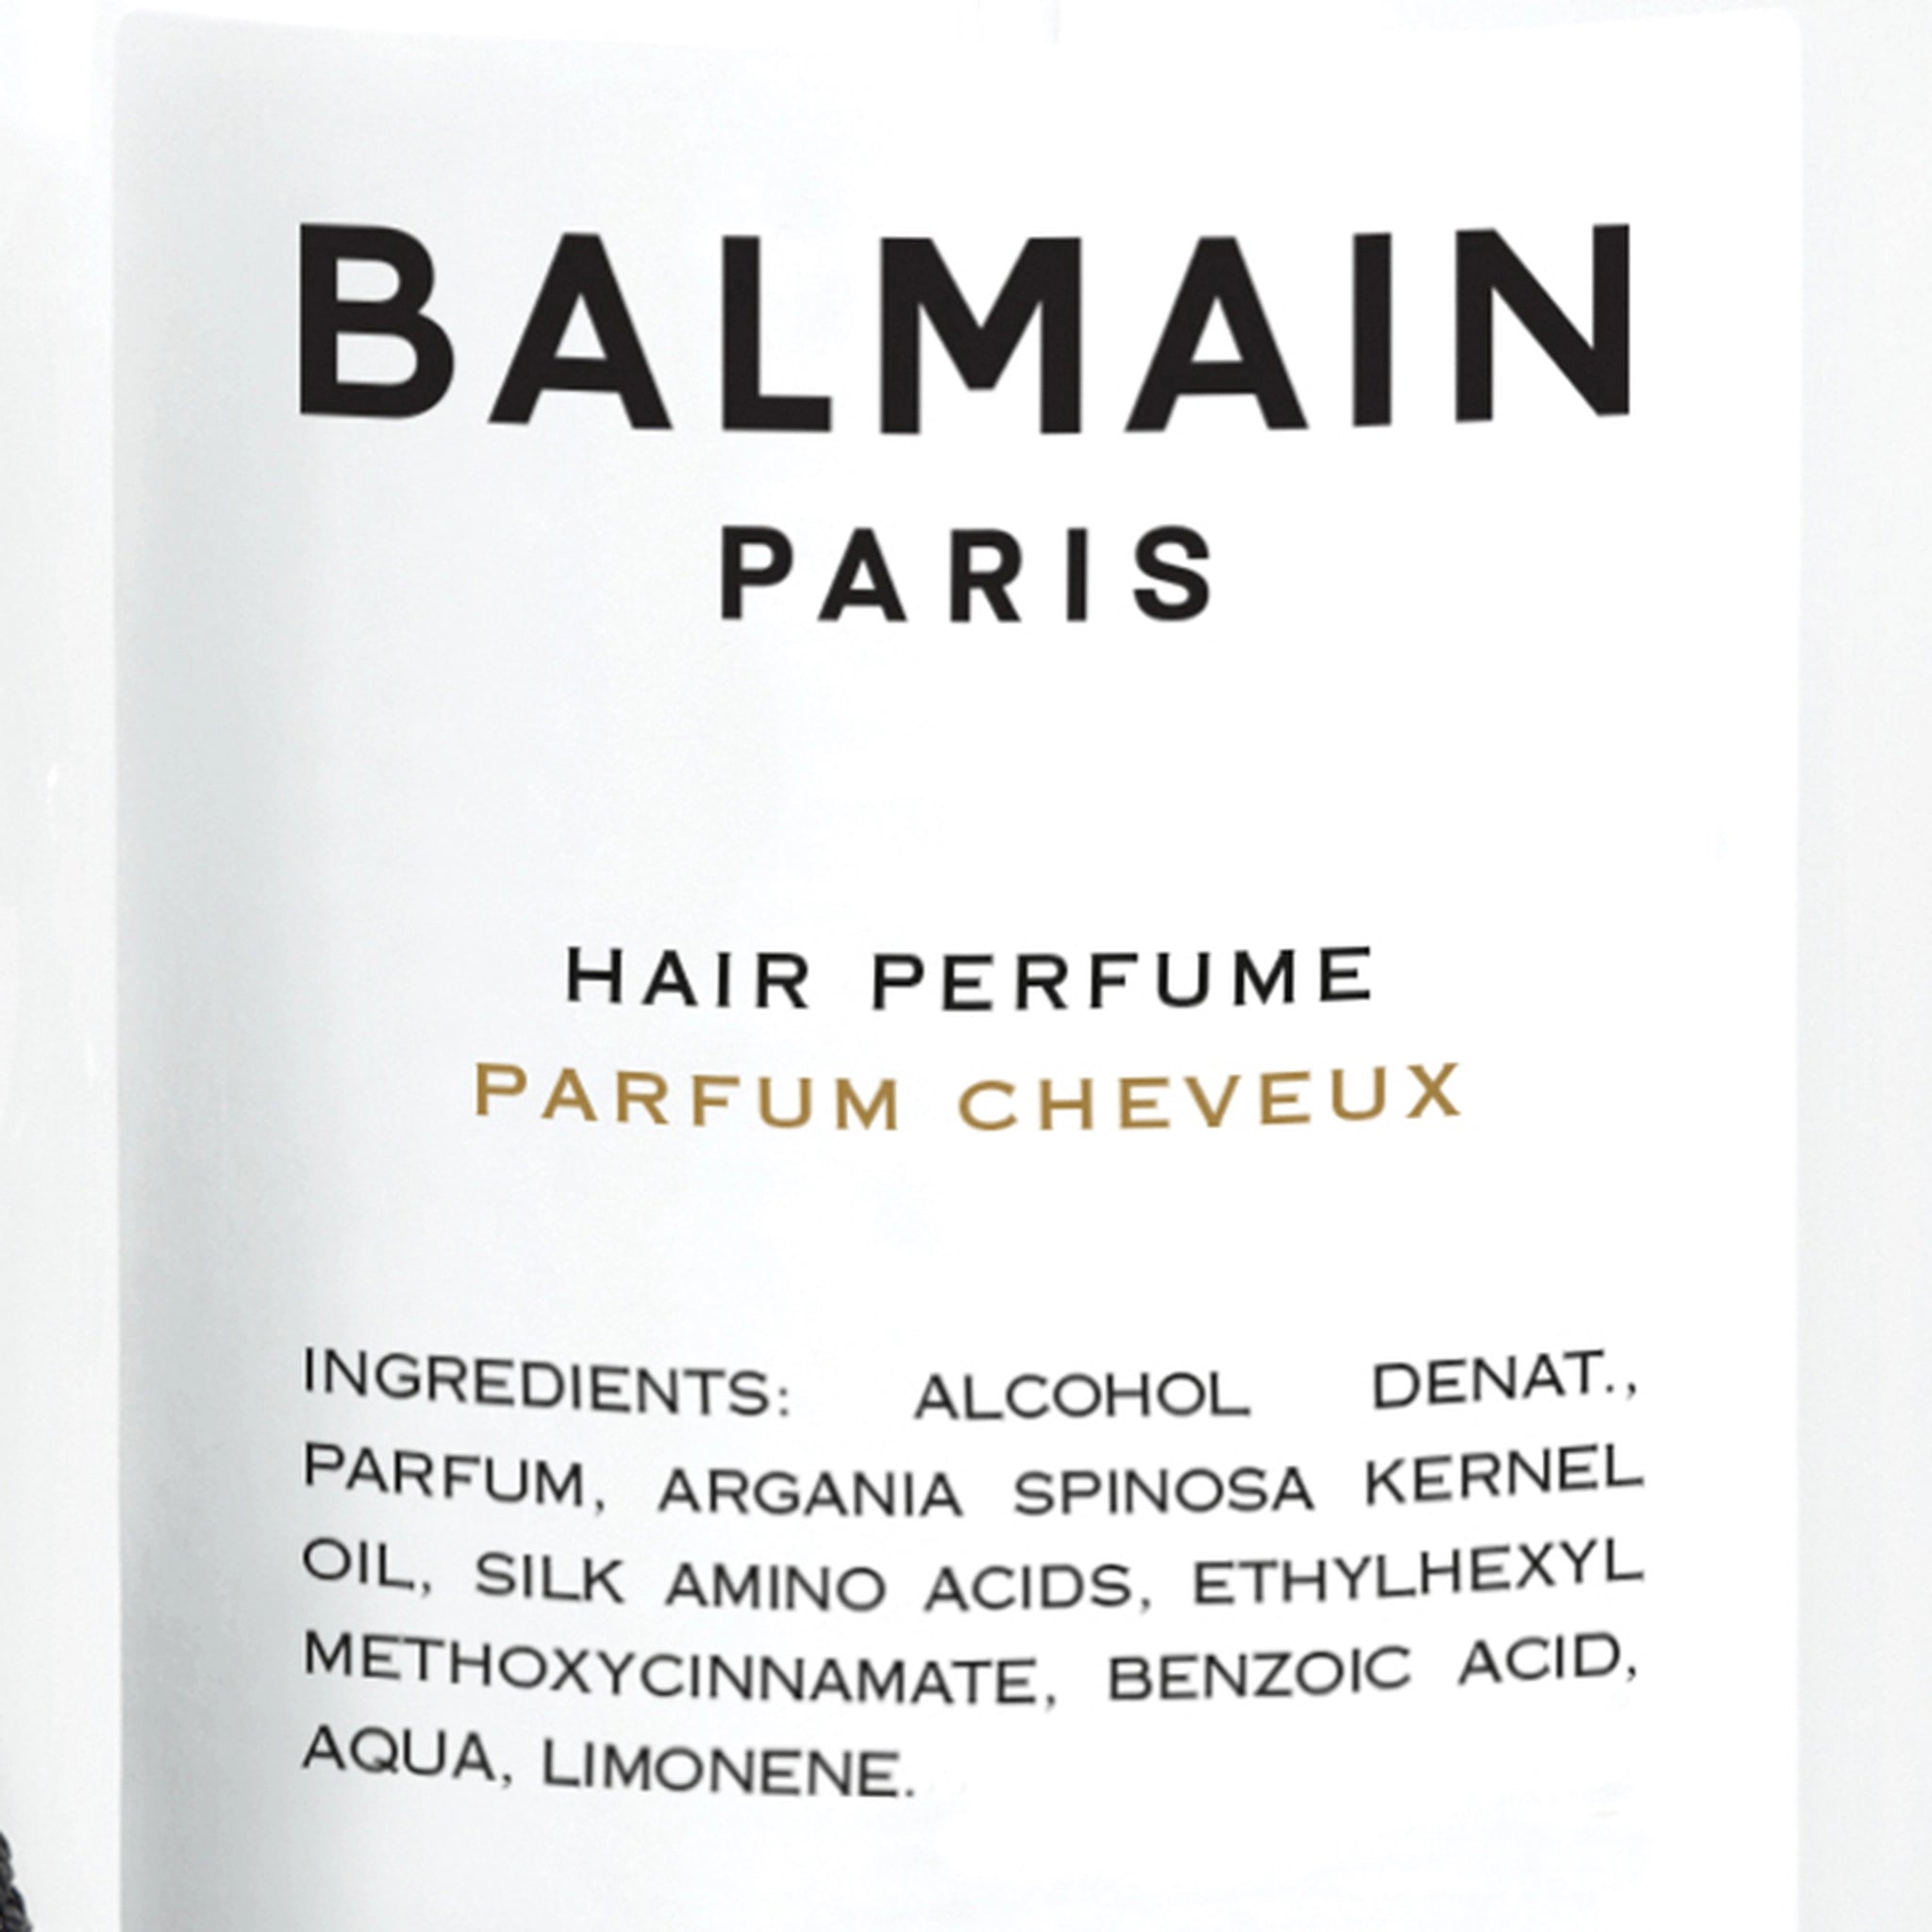 by Balmain Paris Hair Couture at BEON.COM.AU